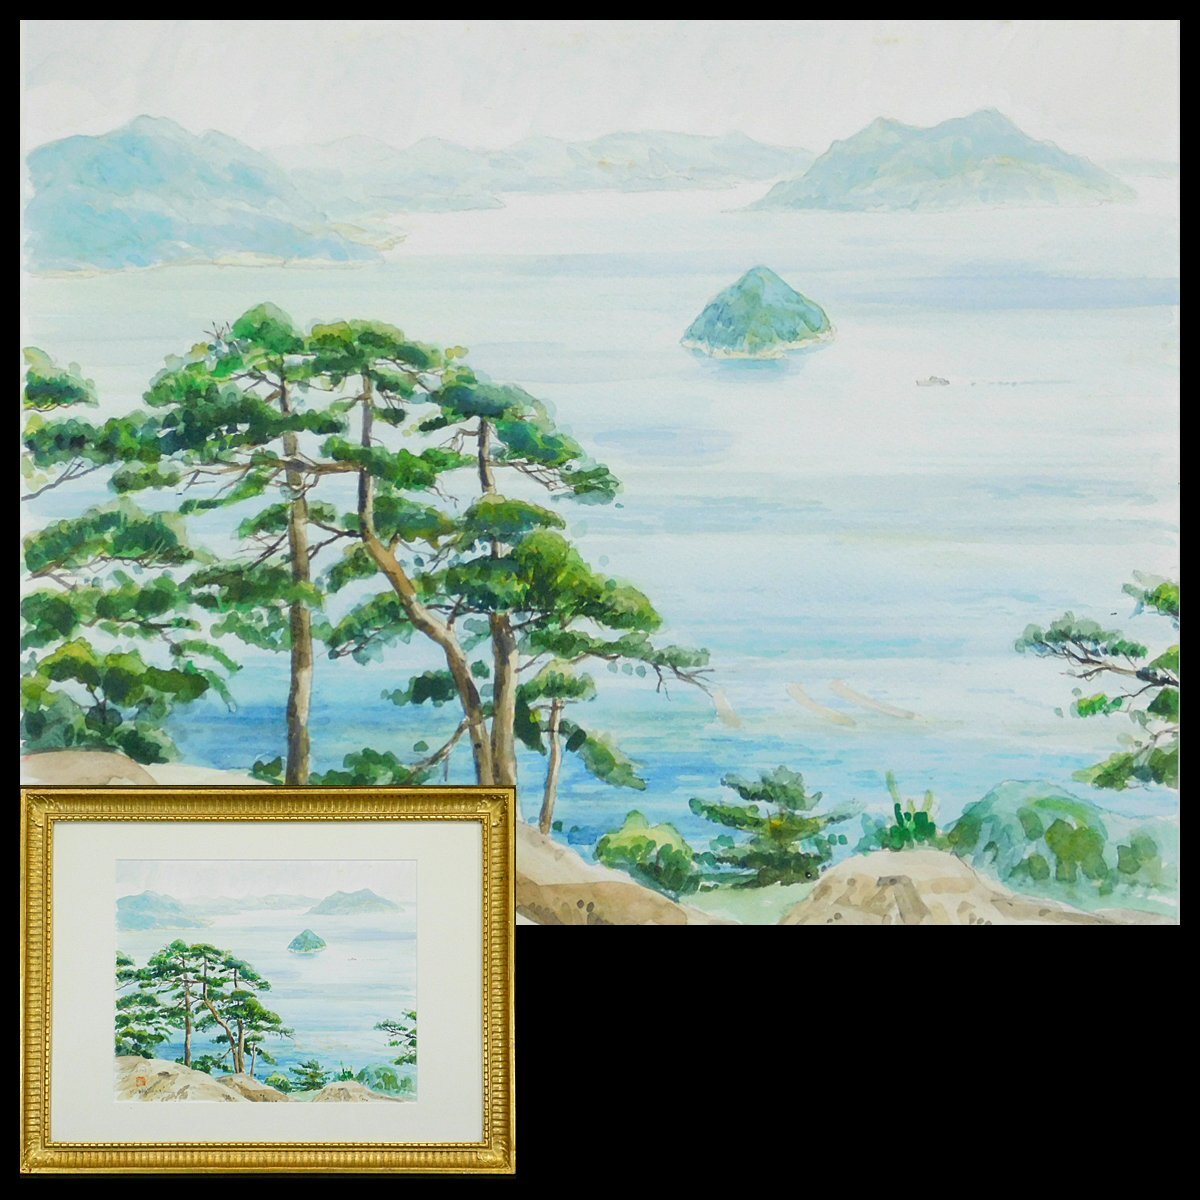 काजुयुकी शिमाज़ु, अकी सागर, वॉटरकलर वाली पेंटिंग, फ़्रेमयुक्त (स्टिकर सहित), संकी सदस्य, निट्टेन, जापान-फ्रांस समकालीन प्रदर्शनी, एसी24031707, चित्रकारी, आबरंग, प्रकृति, परिदृश्य चित्रकला